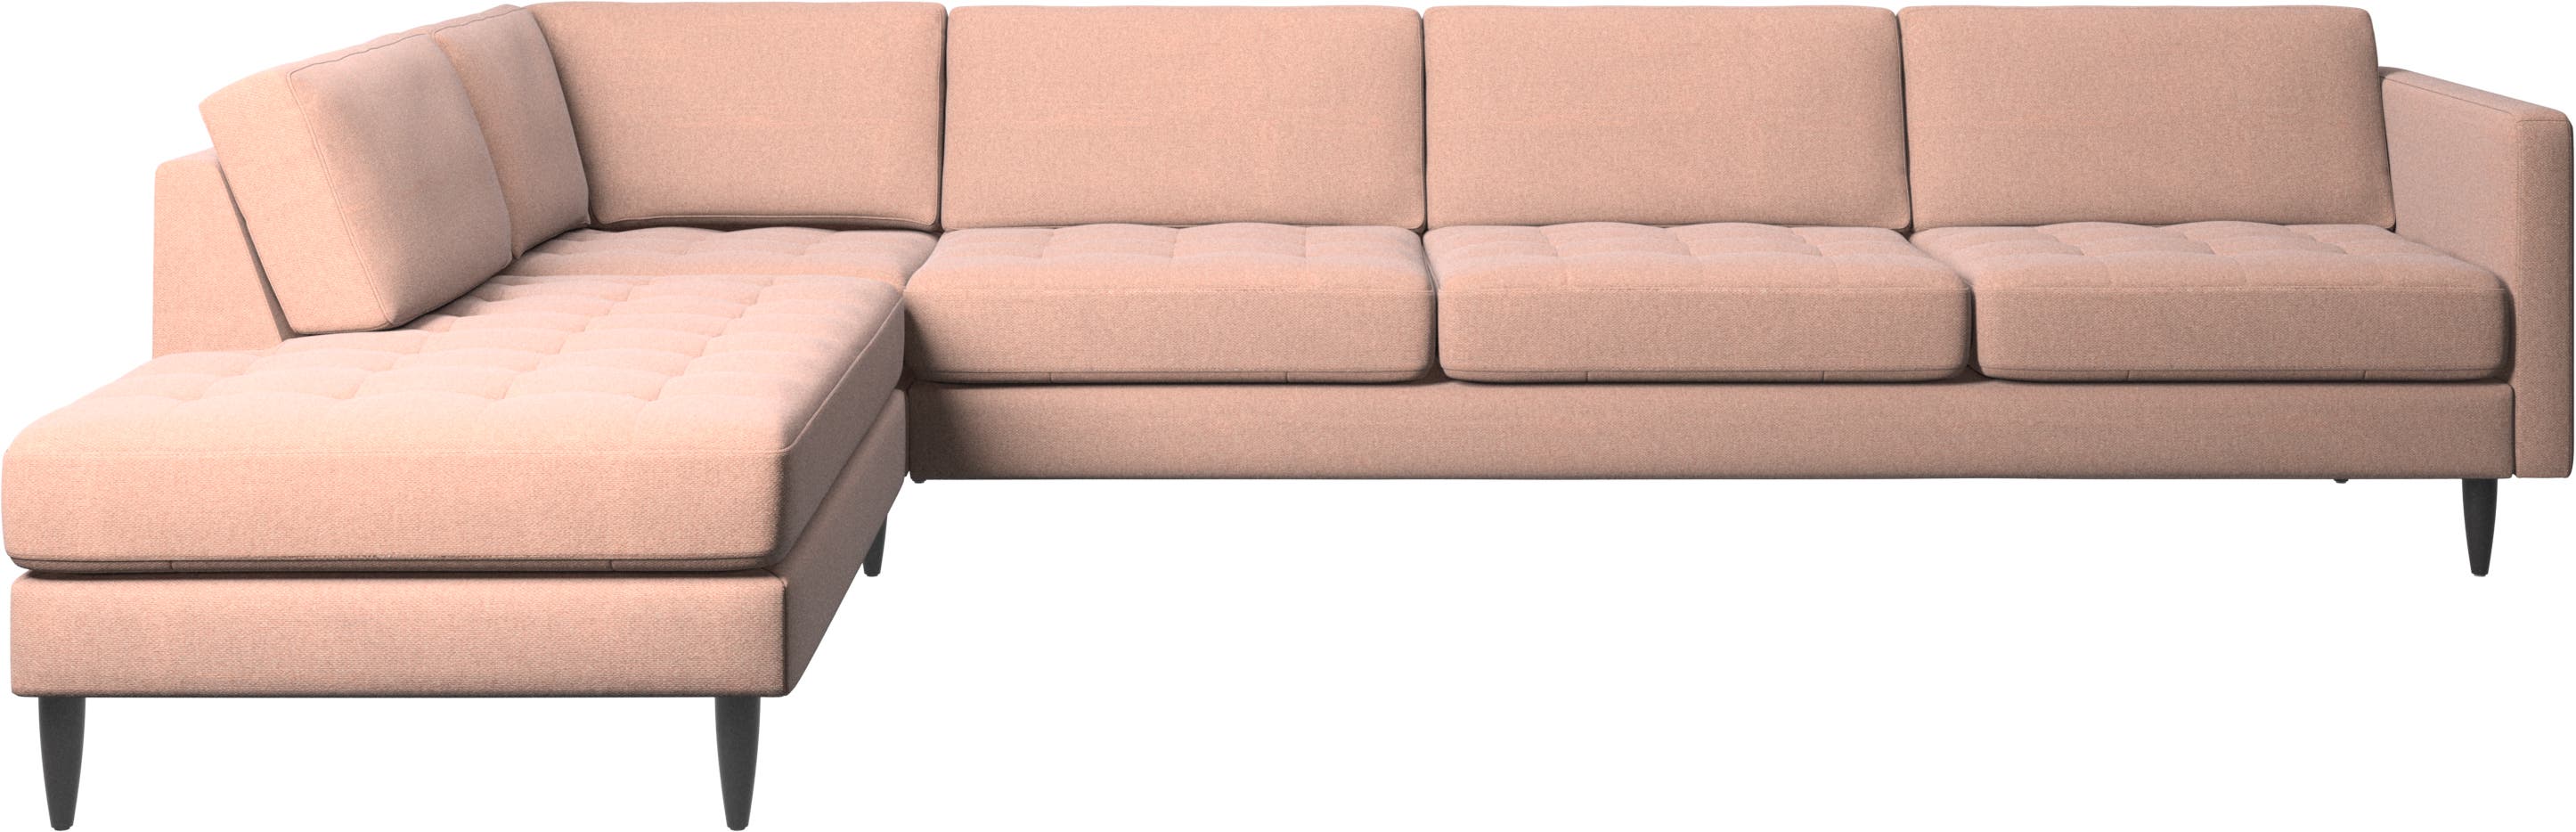 Osaka corner sofa with lounging unit, tufted seat